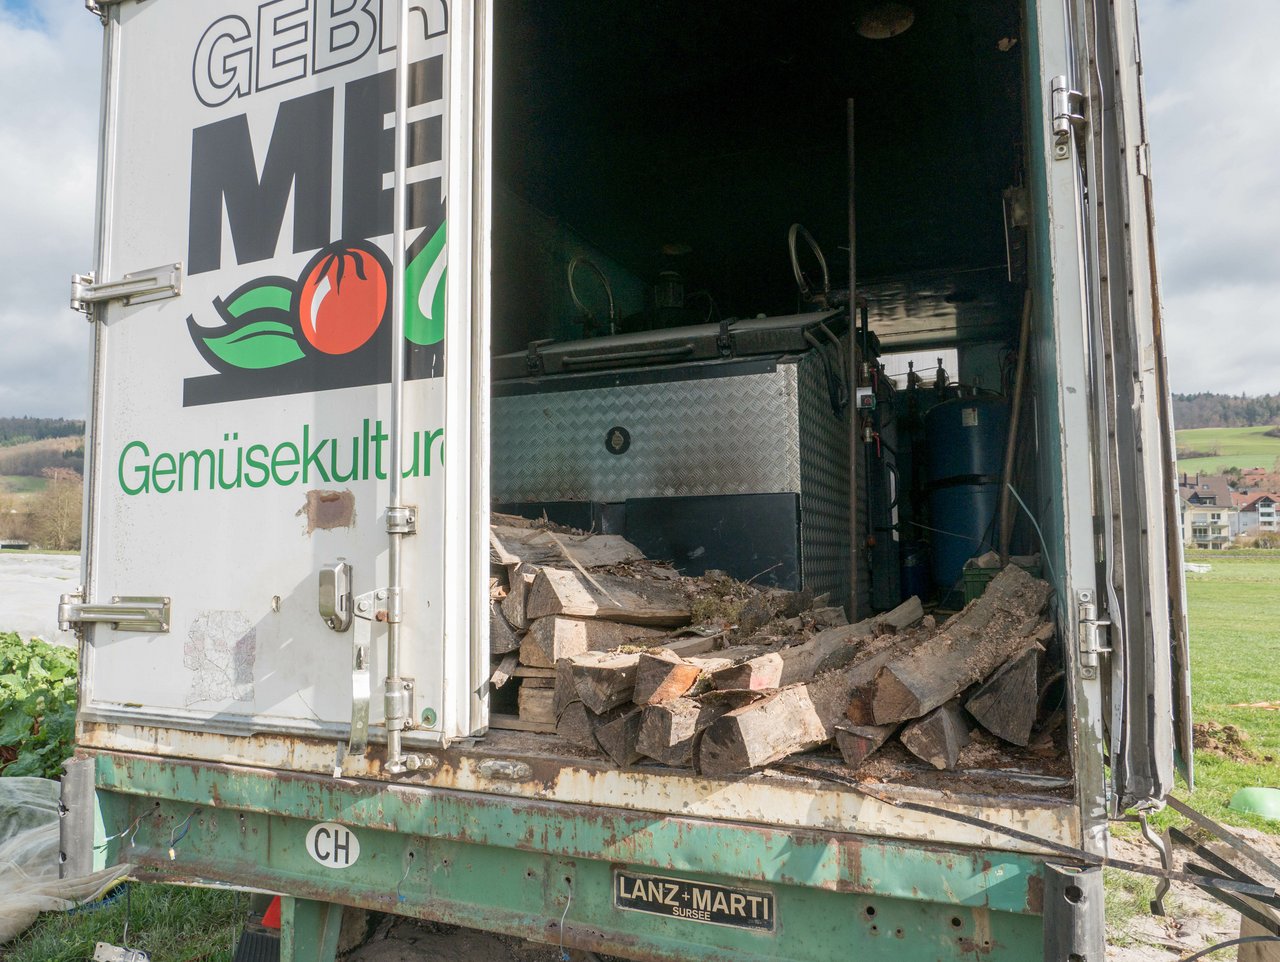 Die mobile Stückholzheizung ist in einem ausrangierten Anhänger eines Berufskollegen installiert. (Bild ep)